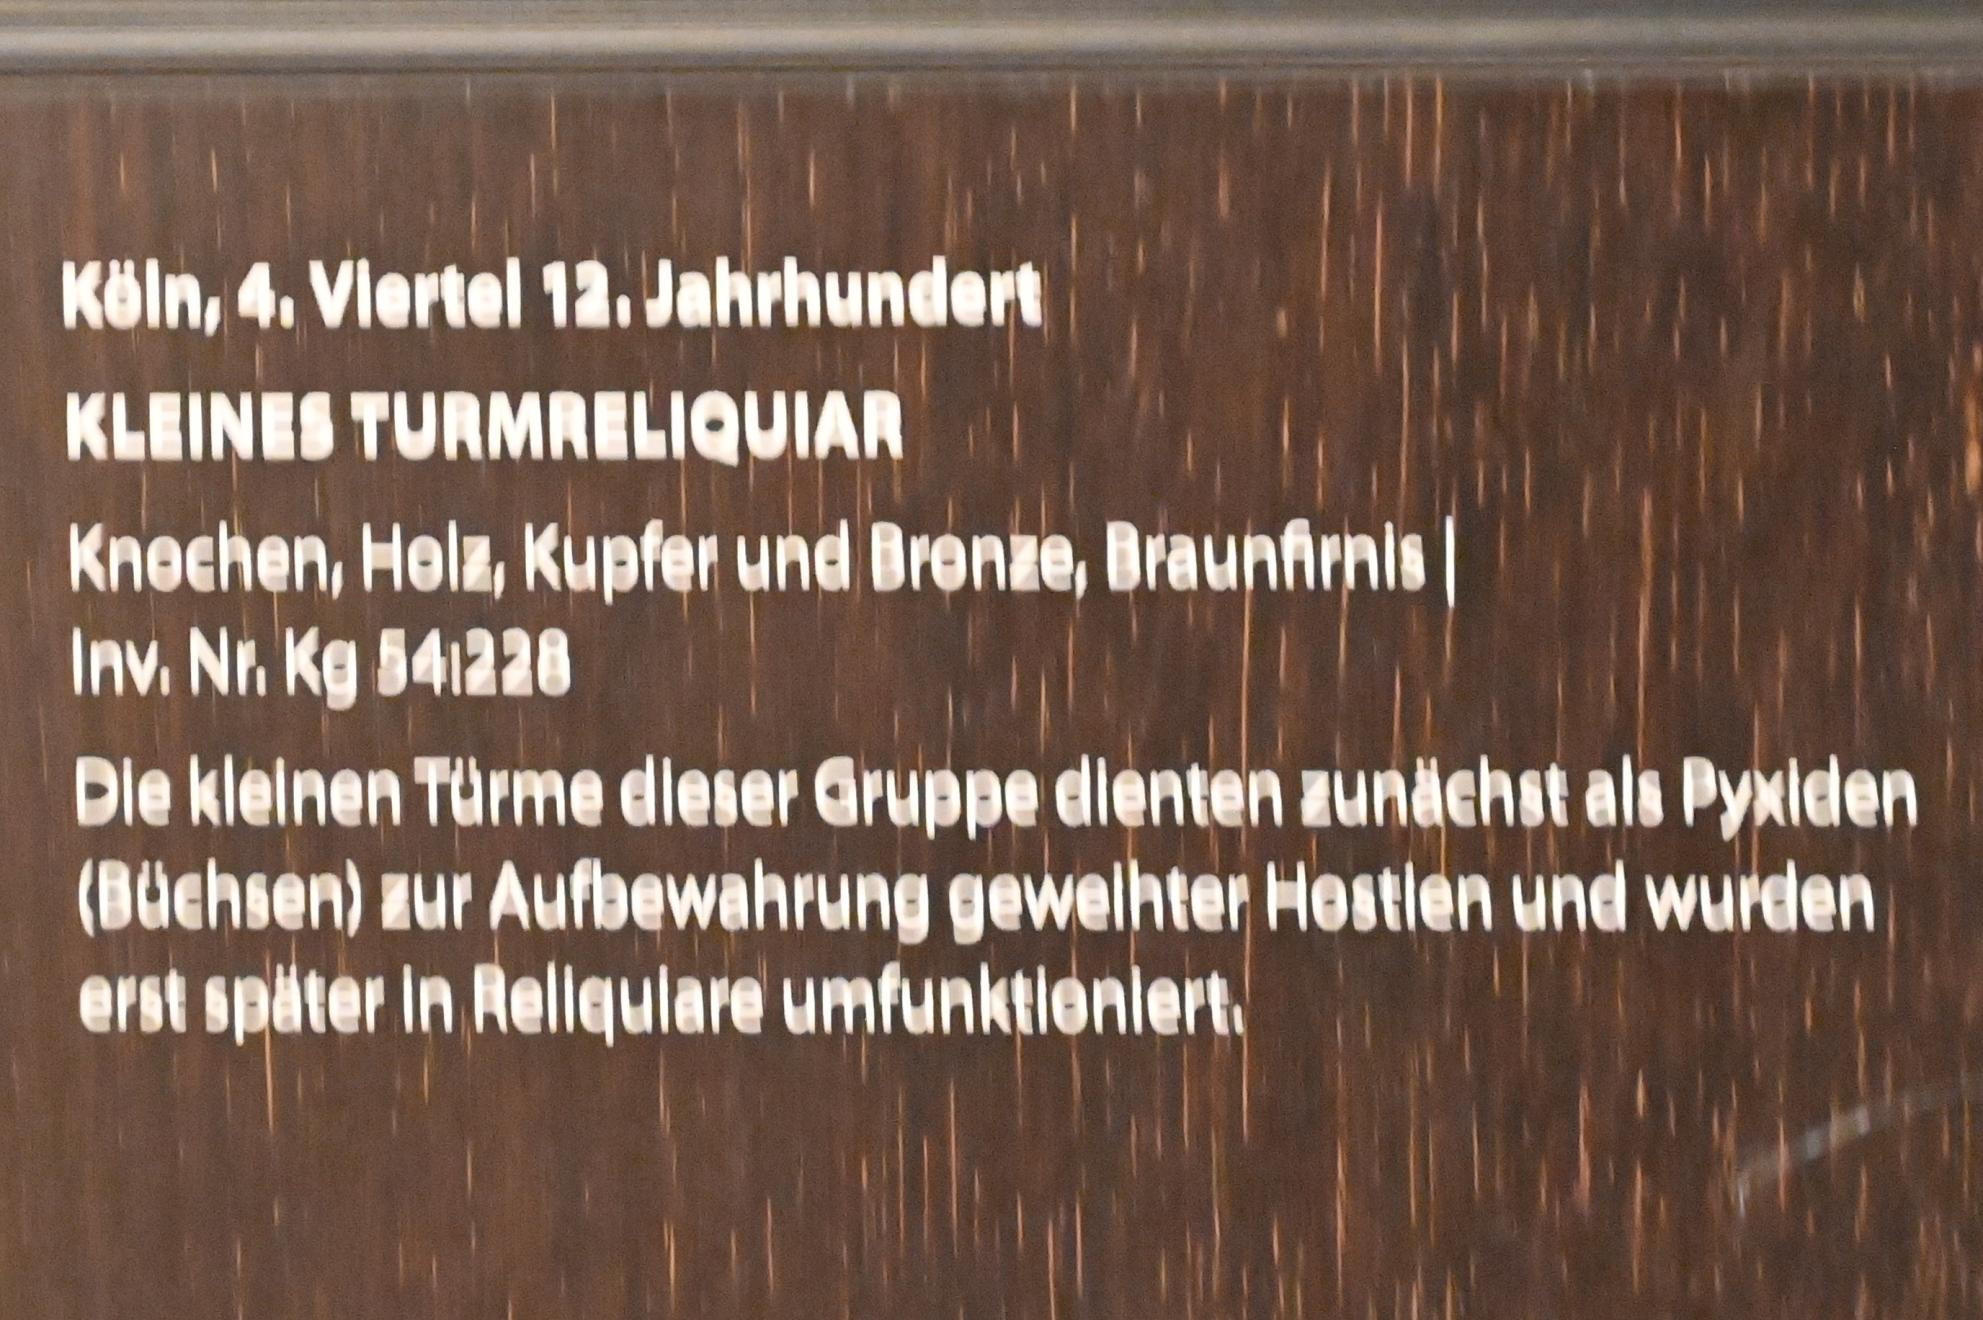 Kleines Turmreliquiar, Darmstadt, Hessisches Landesmuseum, Kirchliche Schatzkammer, Letztes Viertel 12. Jhd., Bild 2/2